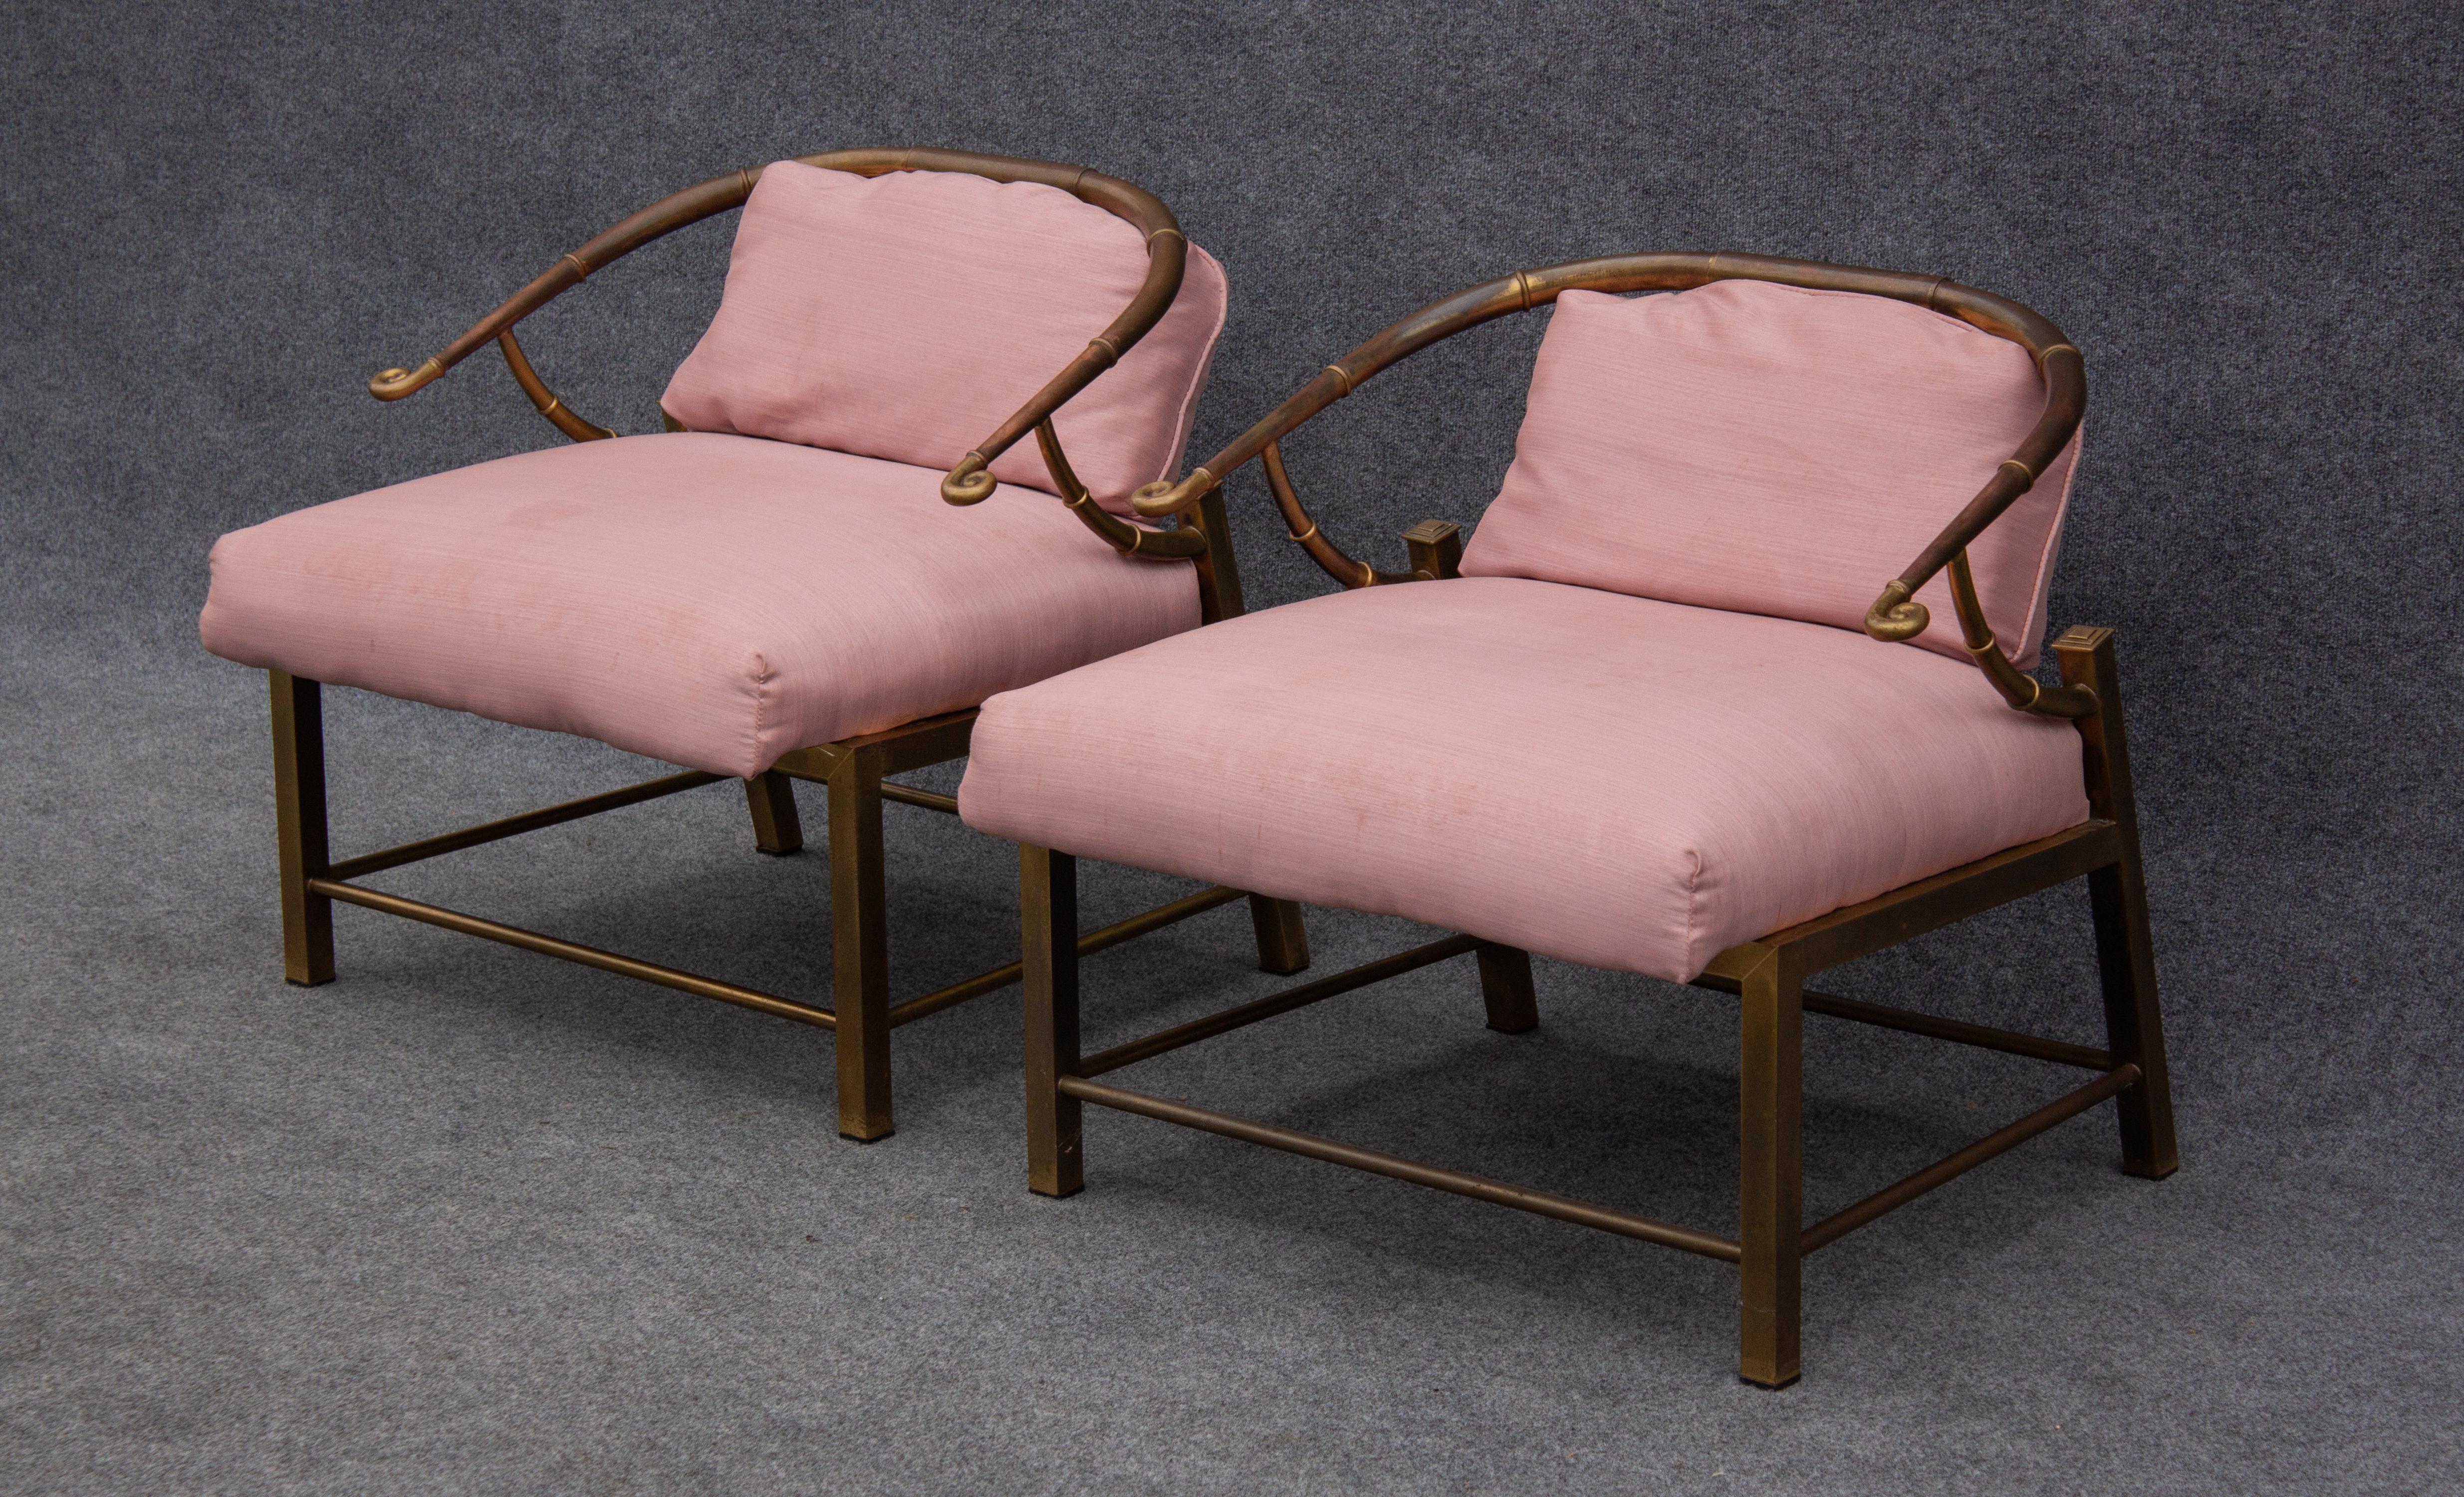 Conçues par Warren Lloyds, ces chaises ont été fabriquées en Italie par Mastercraft, célèbre aujourd'hui pour sa très grande qualité de construction et ses diverses pièces en laiton. Ces chaises sont fabriquées en acier plaqué laiton et présentent